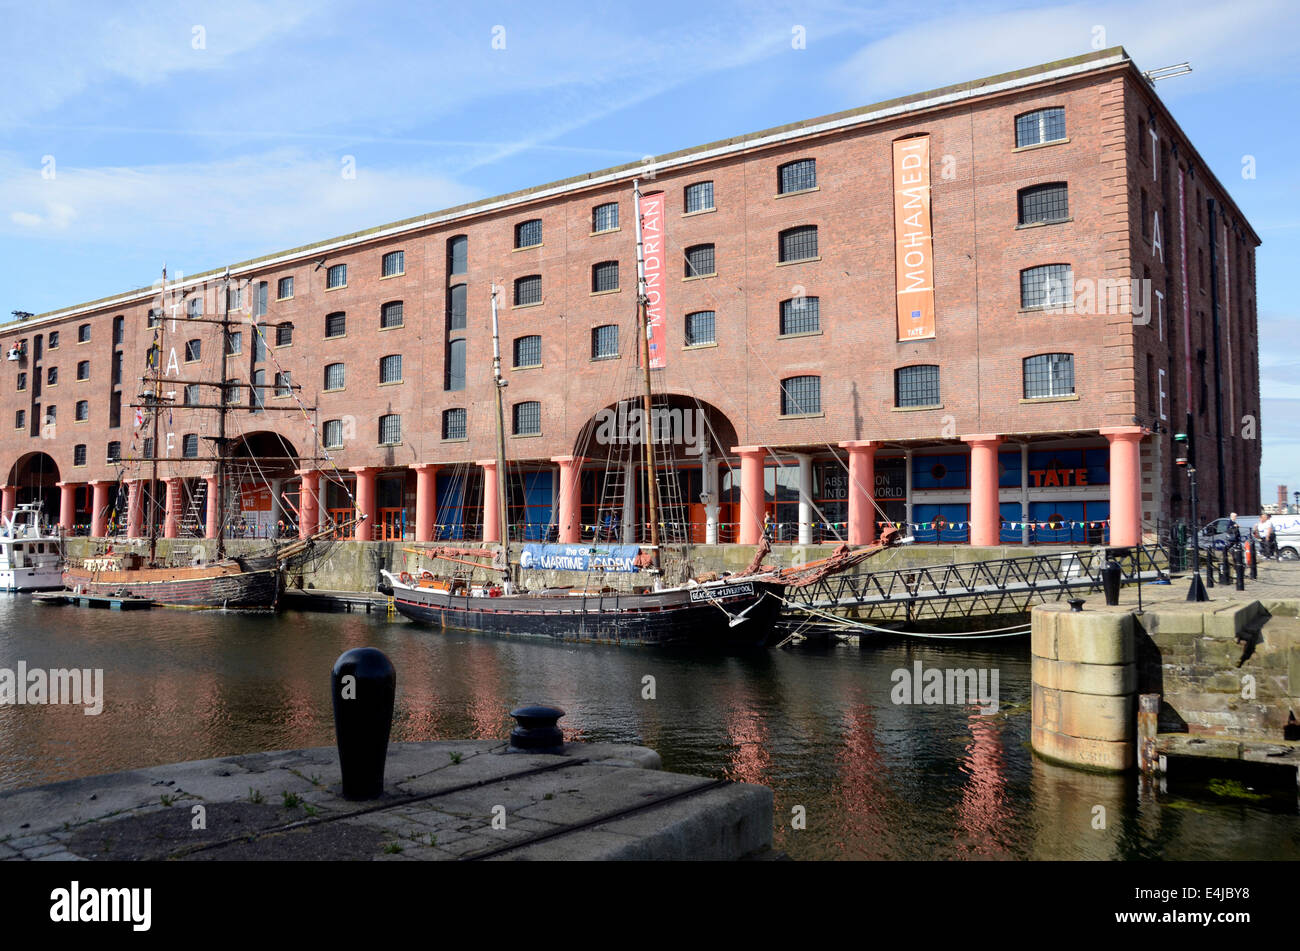 Tate Liverpool galleria d'arte sull'Albert Dock, Liverpool, in Inghilterra, Regno Unito Foto Stock